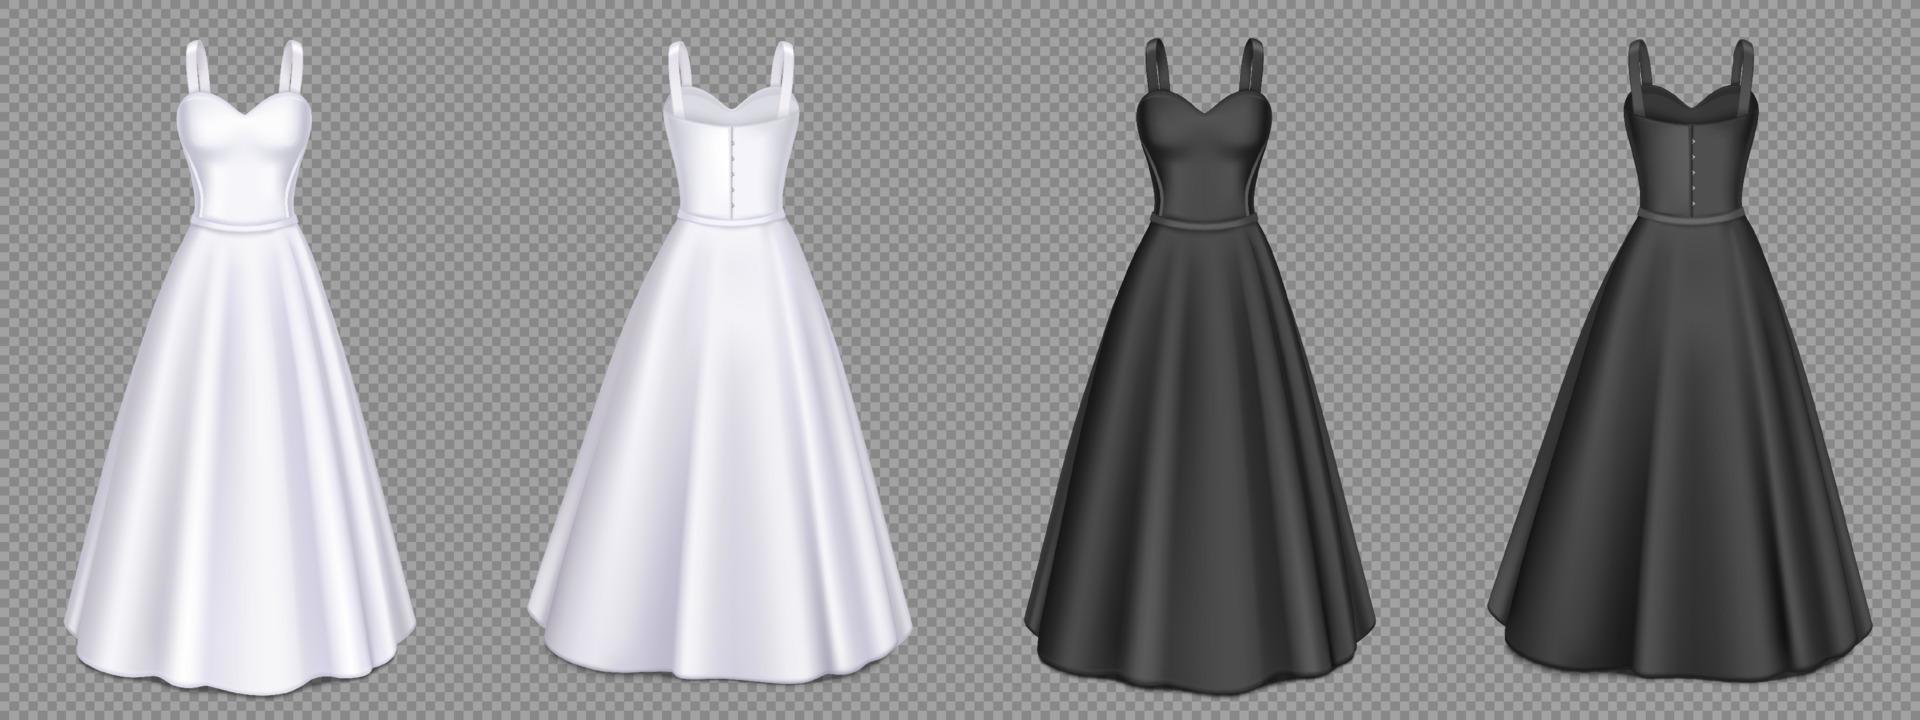 vestidos femininos brancos e pretos com espartilho vetor